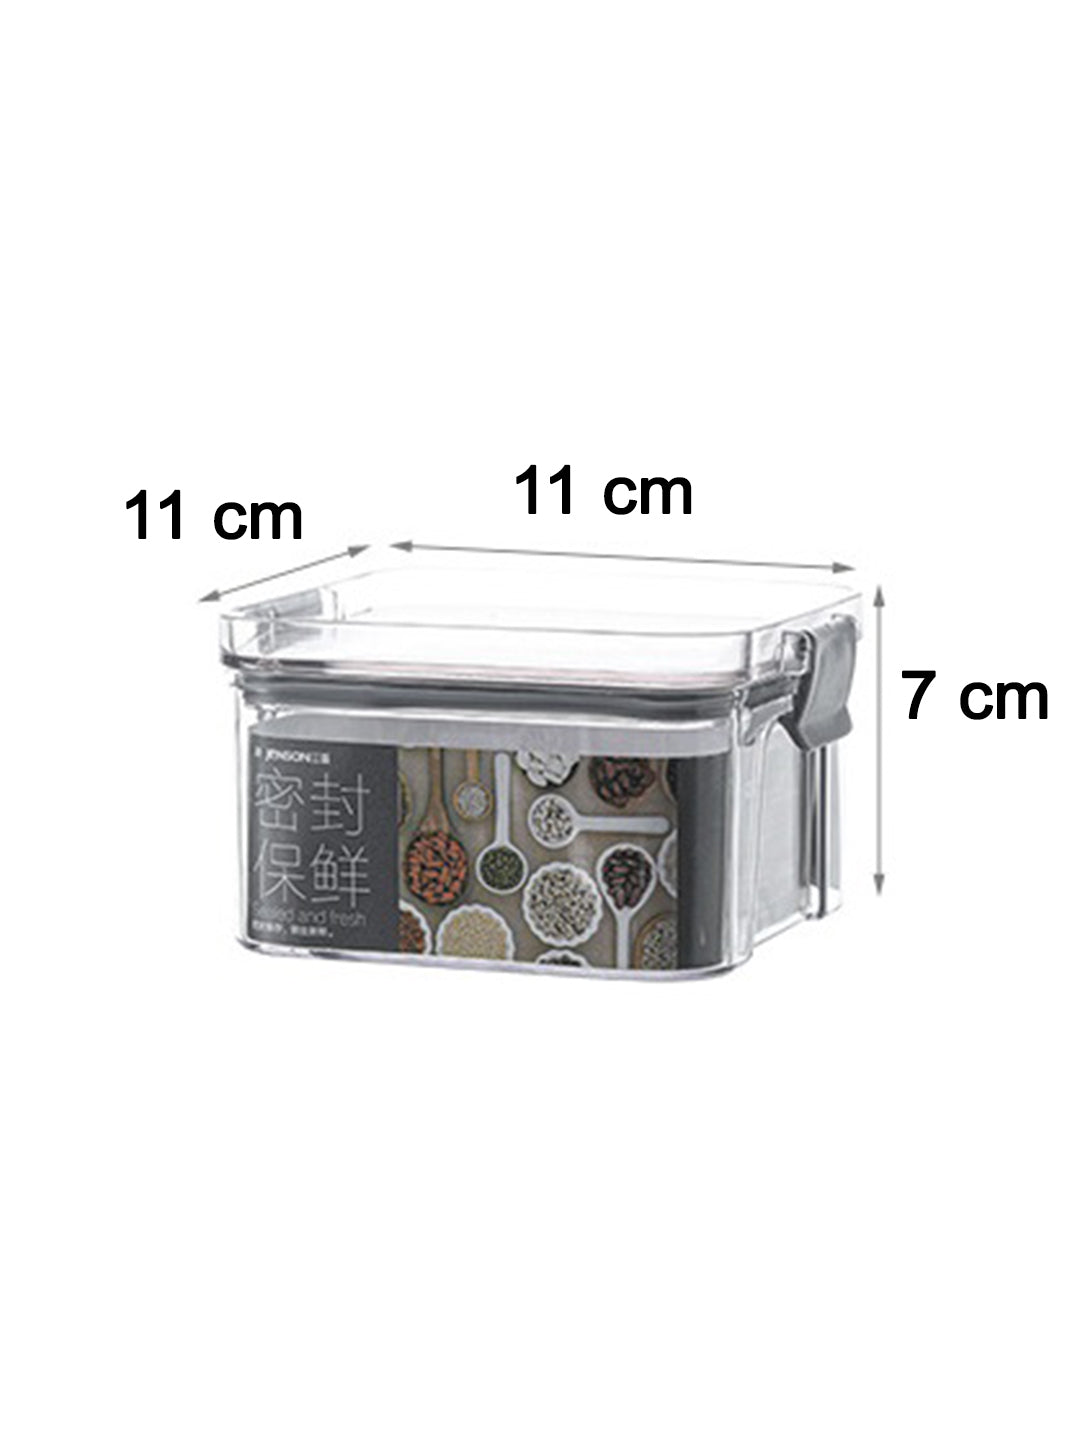 VON CASA Tiny Plastic Storage Container - Transparent & Grey